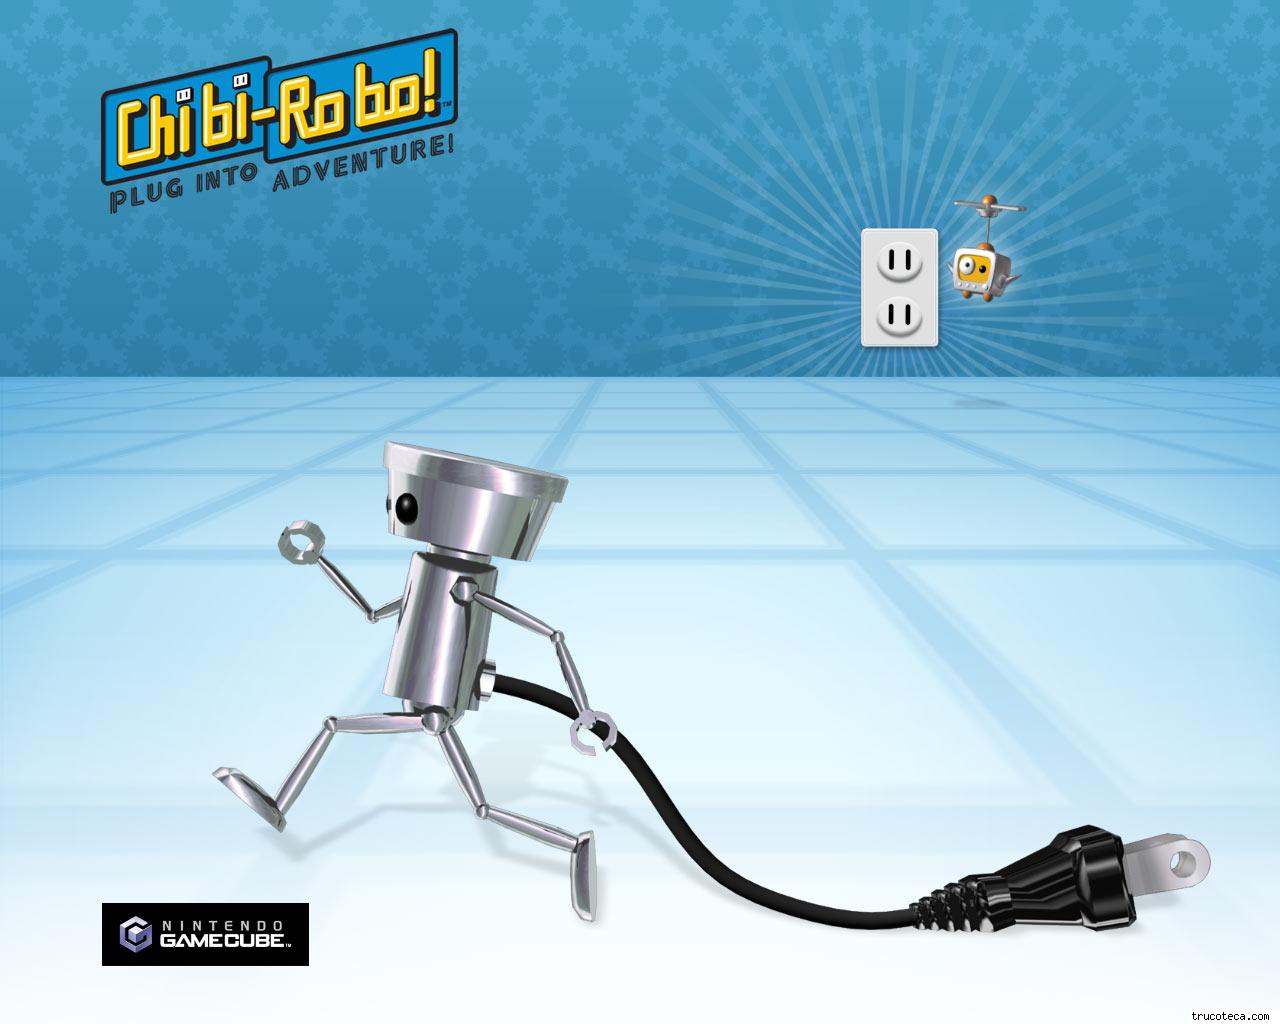  de juegos Chibi Robo fondos de Chibi Robo wallpapers de Chibi Robo